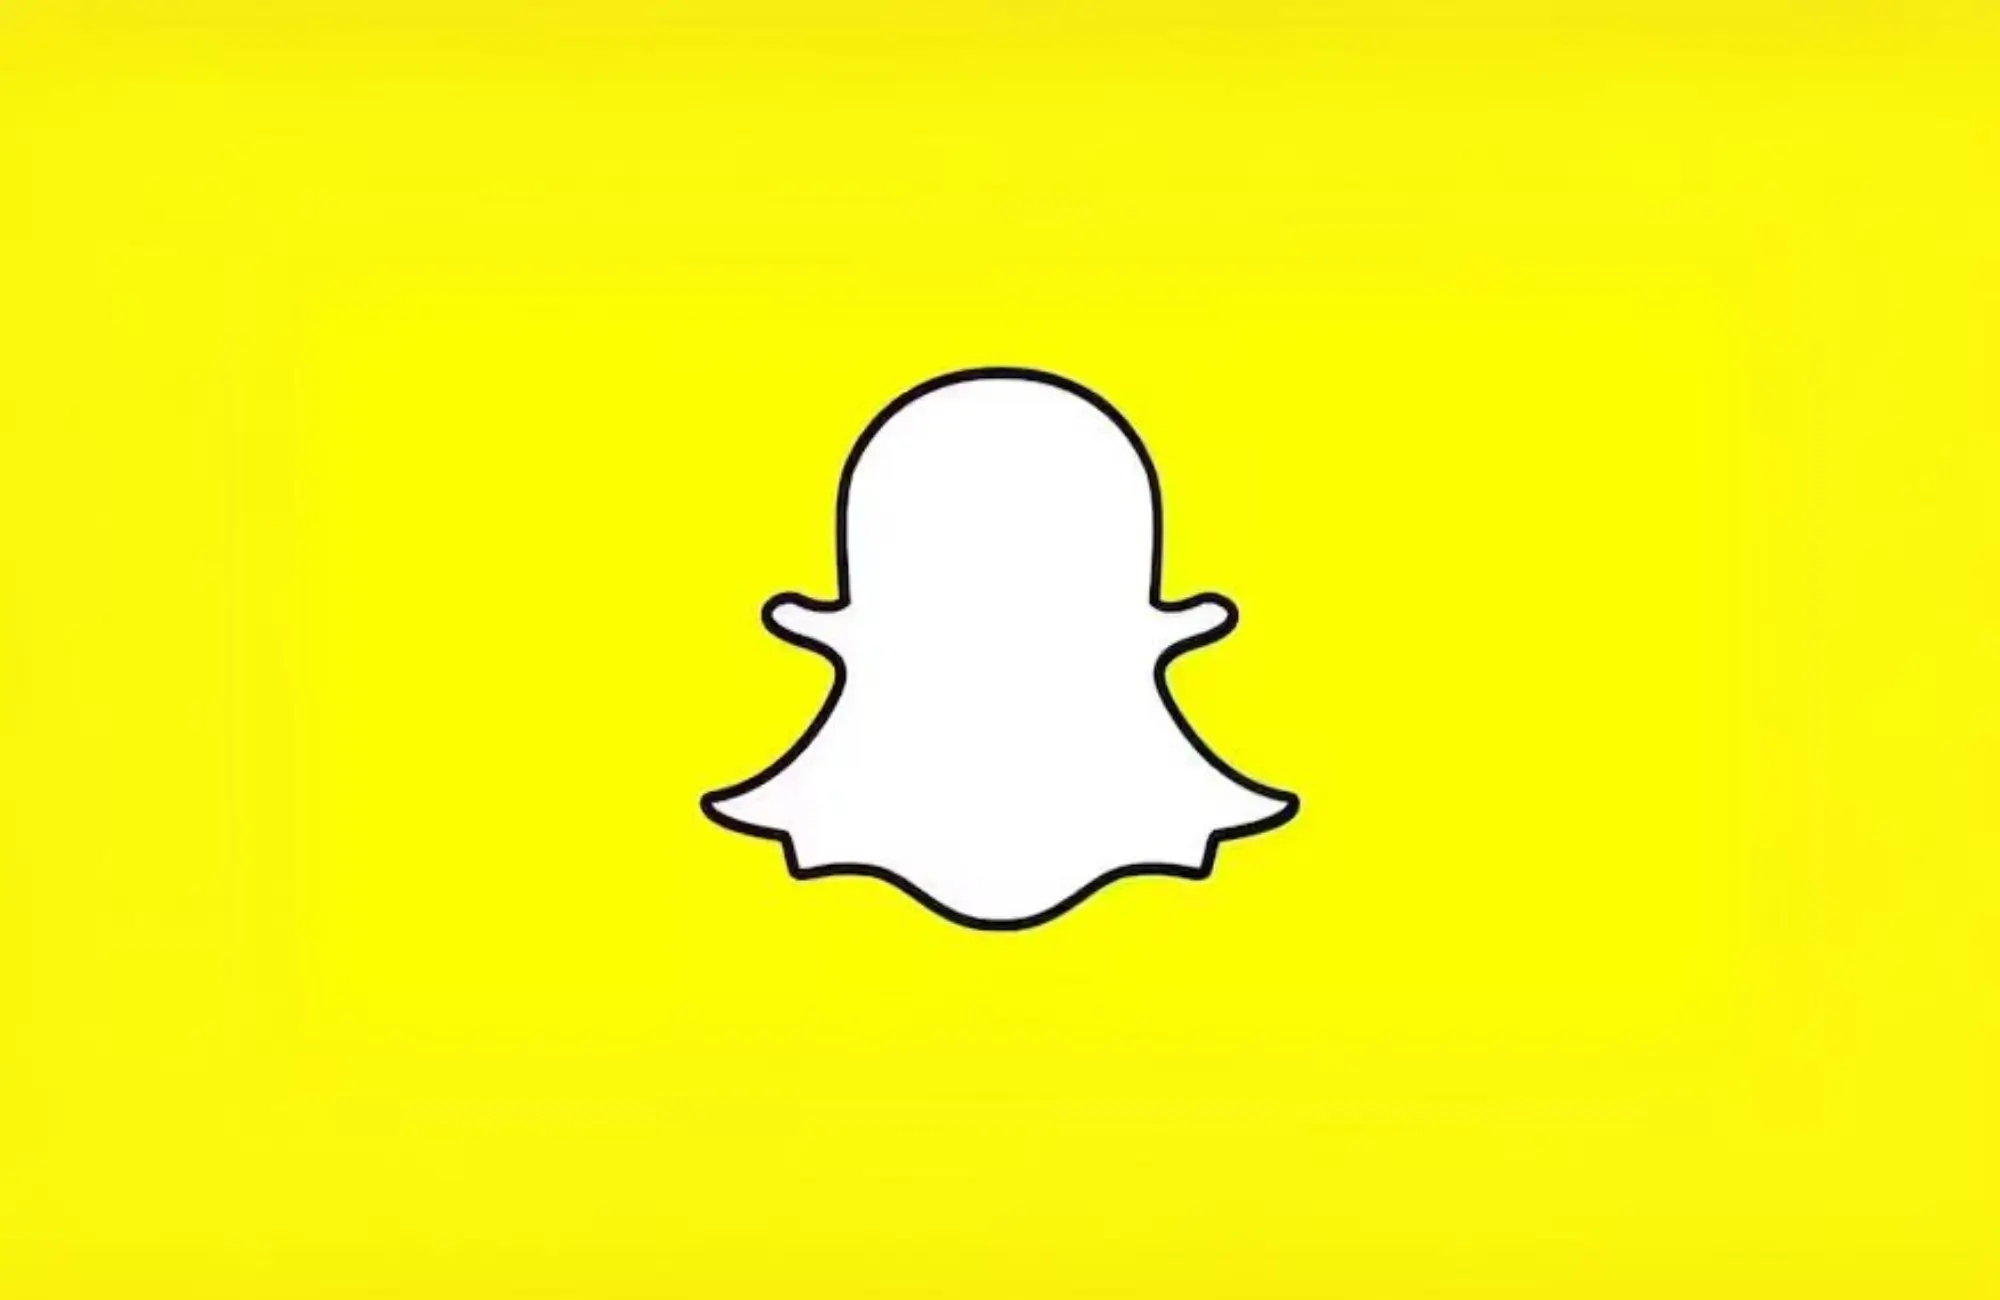 Snapchat Group Chat Names